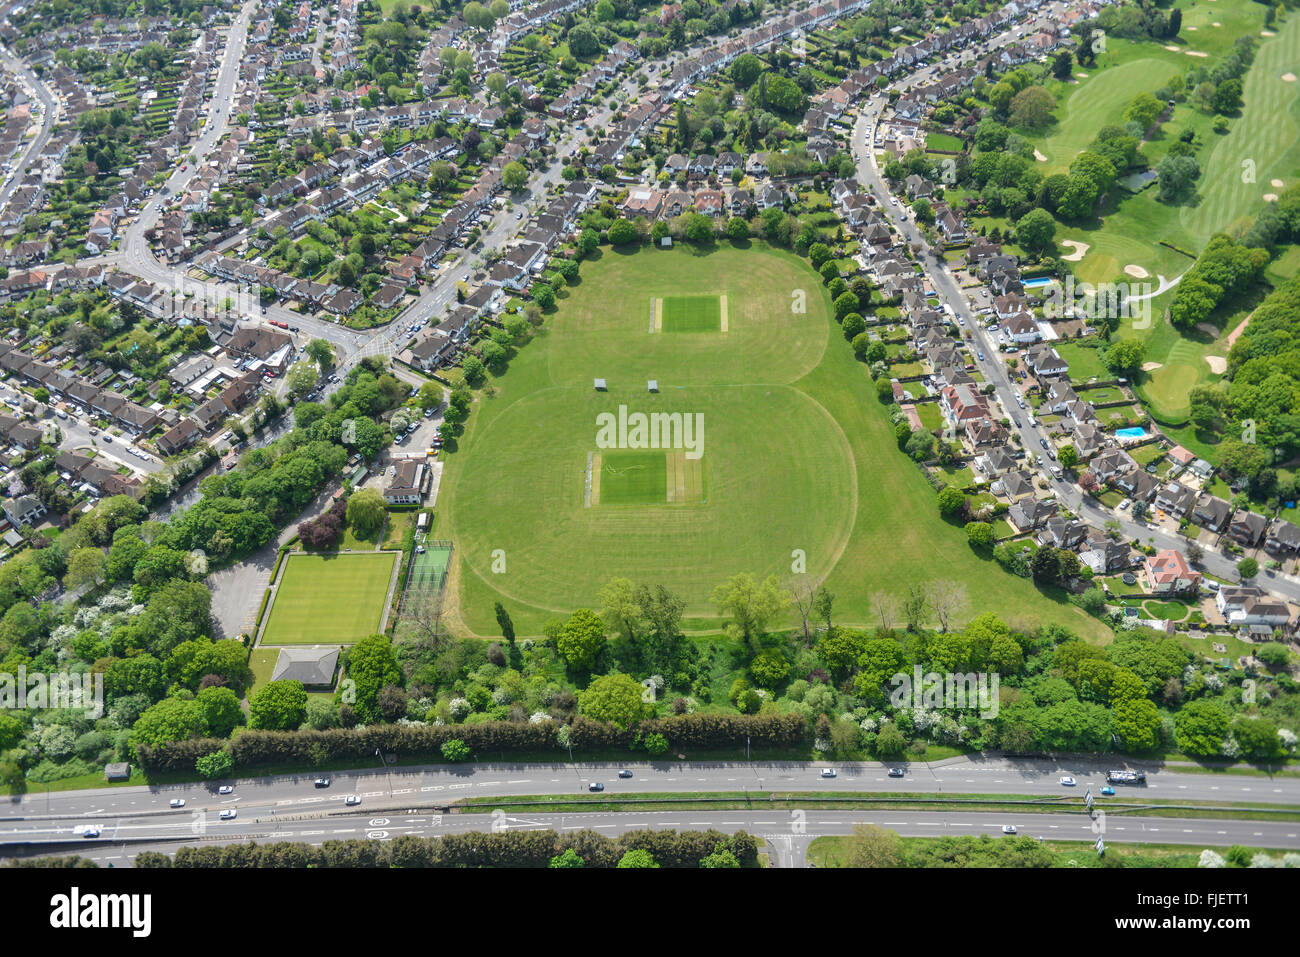 Une vue aérienne du terrain de sport, parc Gidea Havering, Grand Londres Banque D'Images